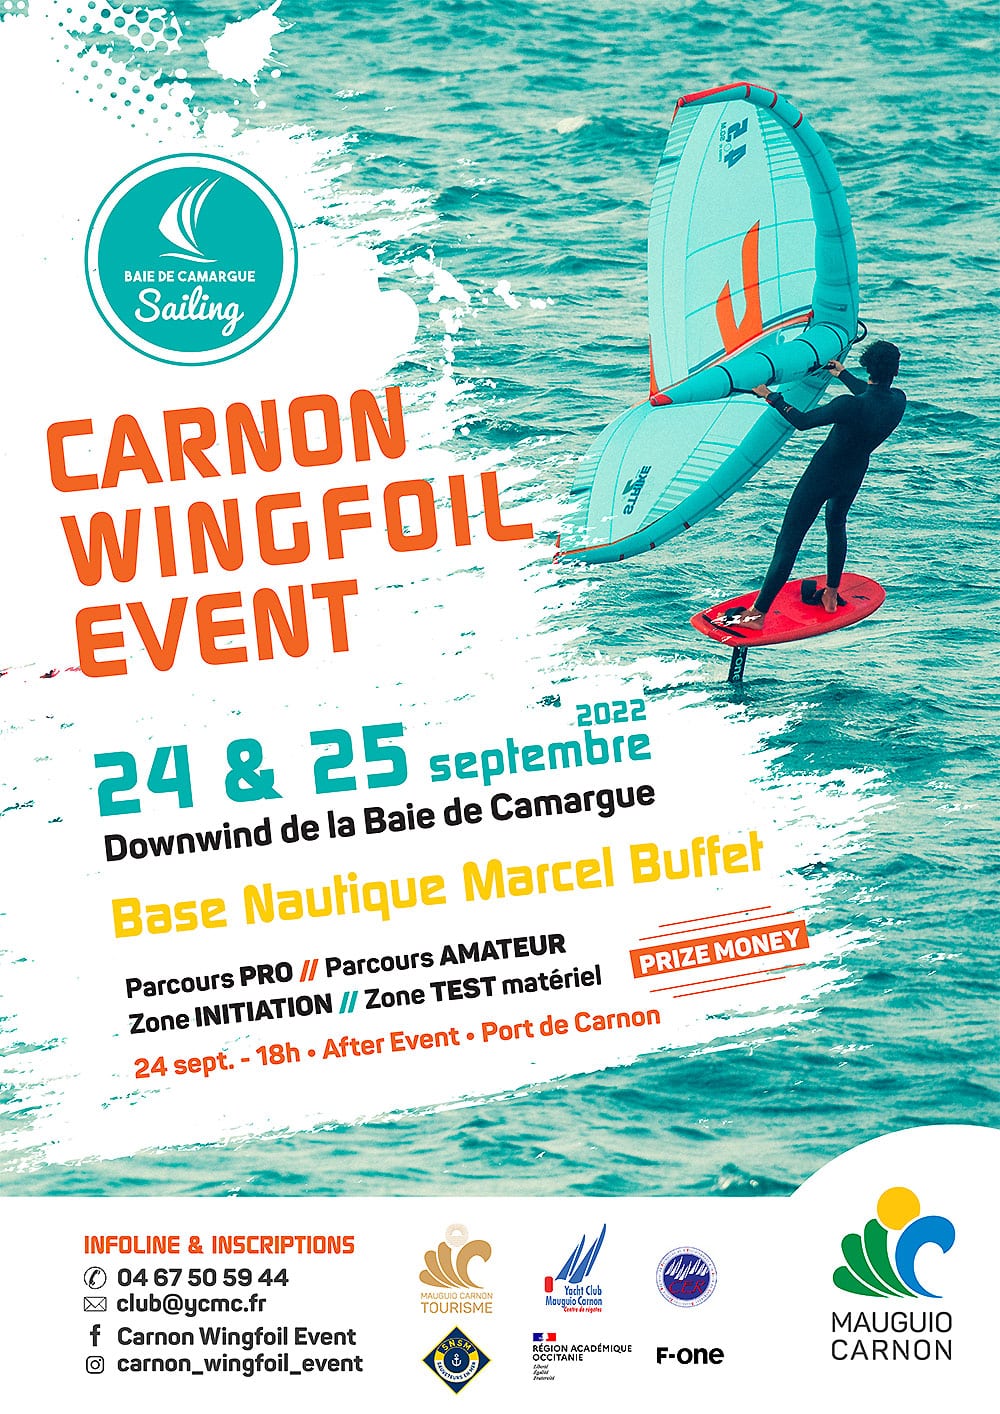 Carnon Wingfoil Event